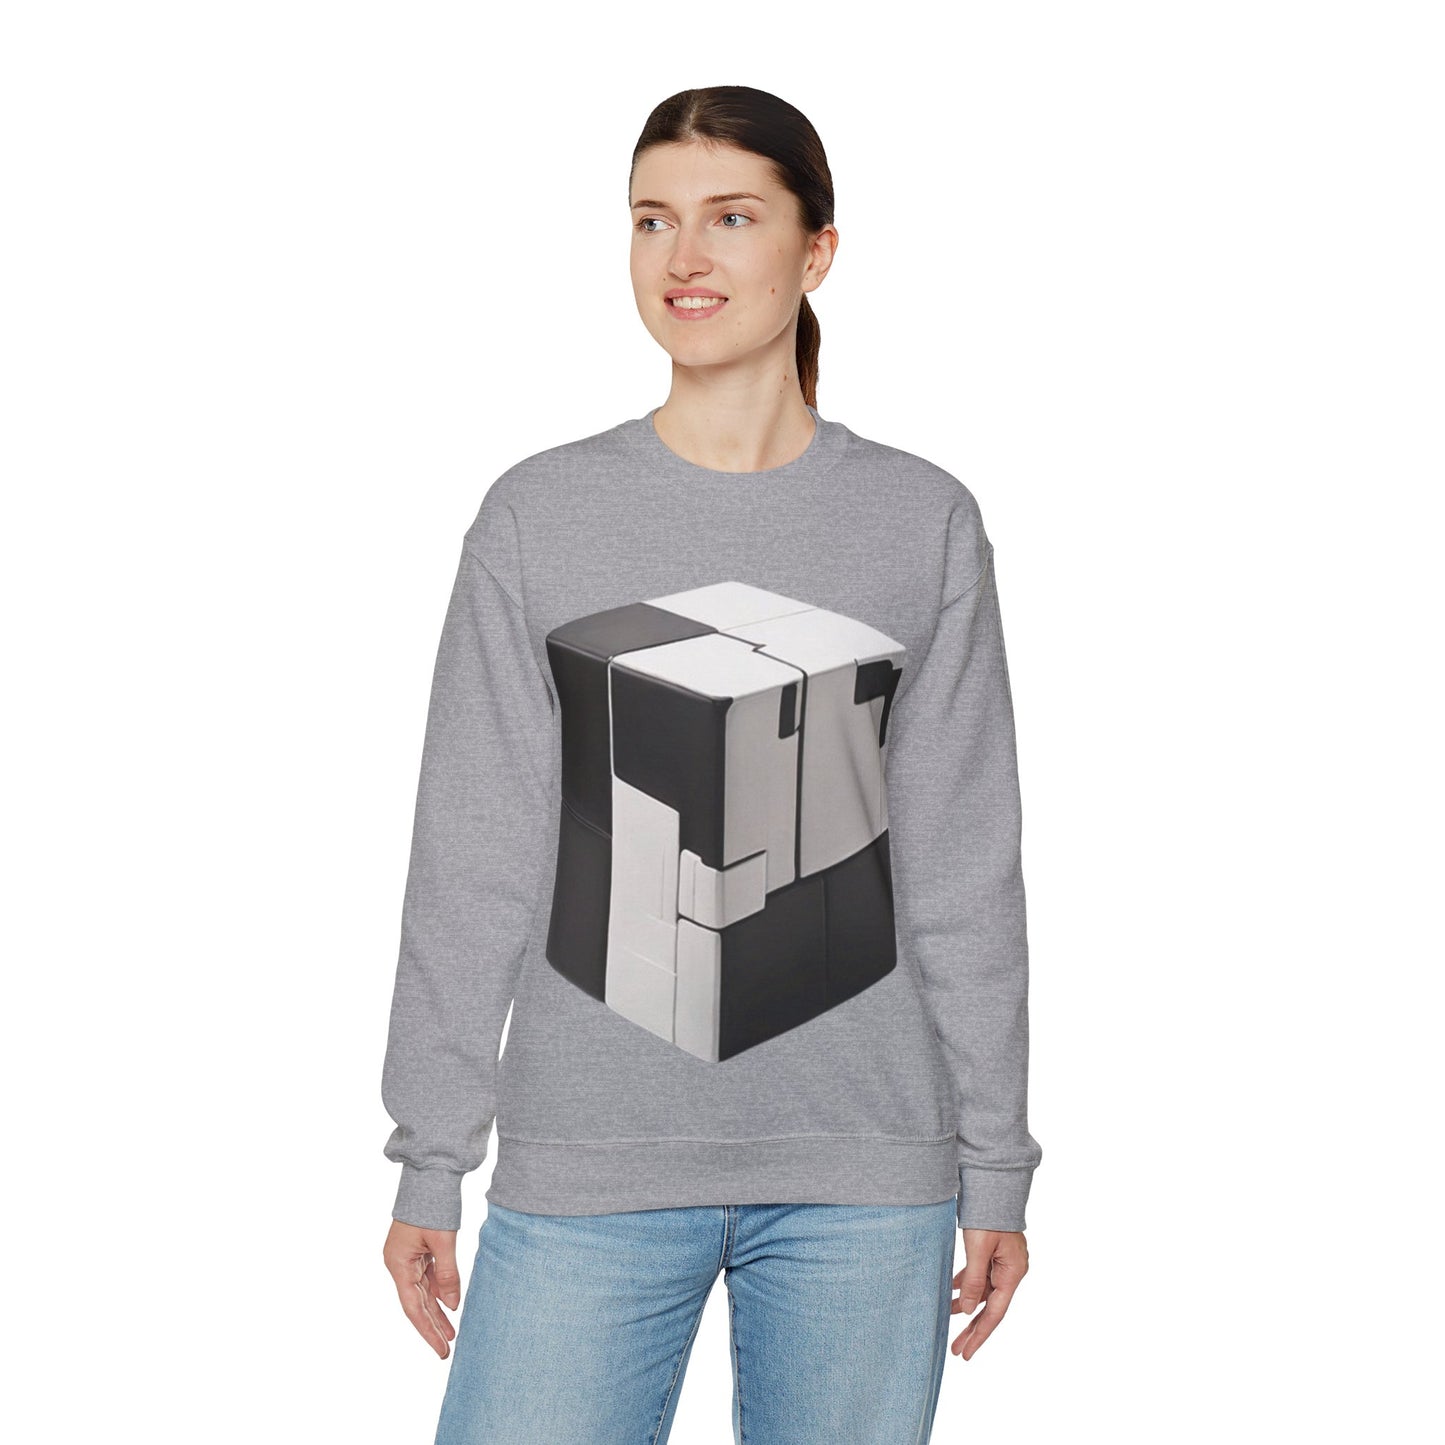 Black and White Cube - Unisex Crewneck Sweatshirt